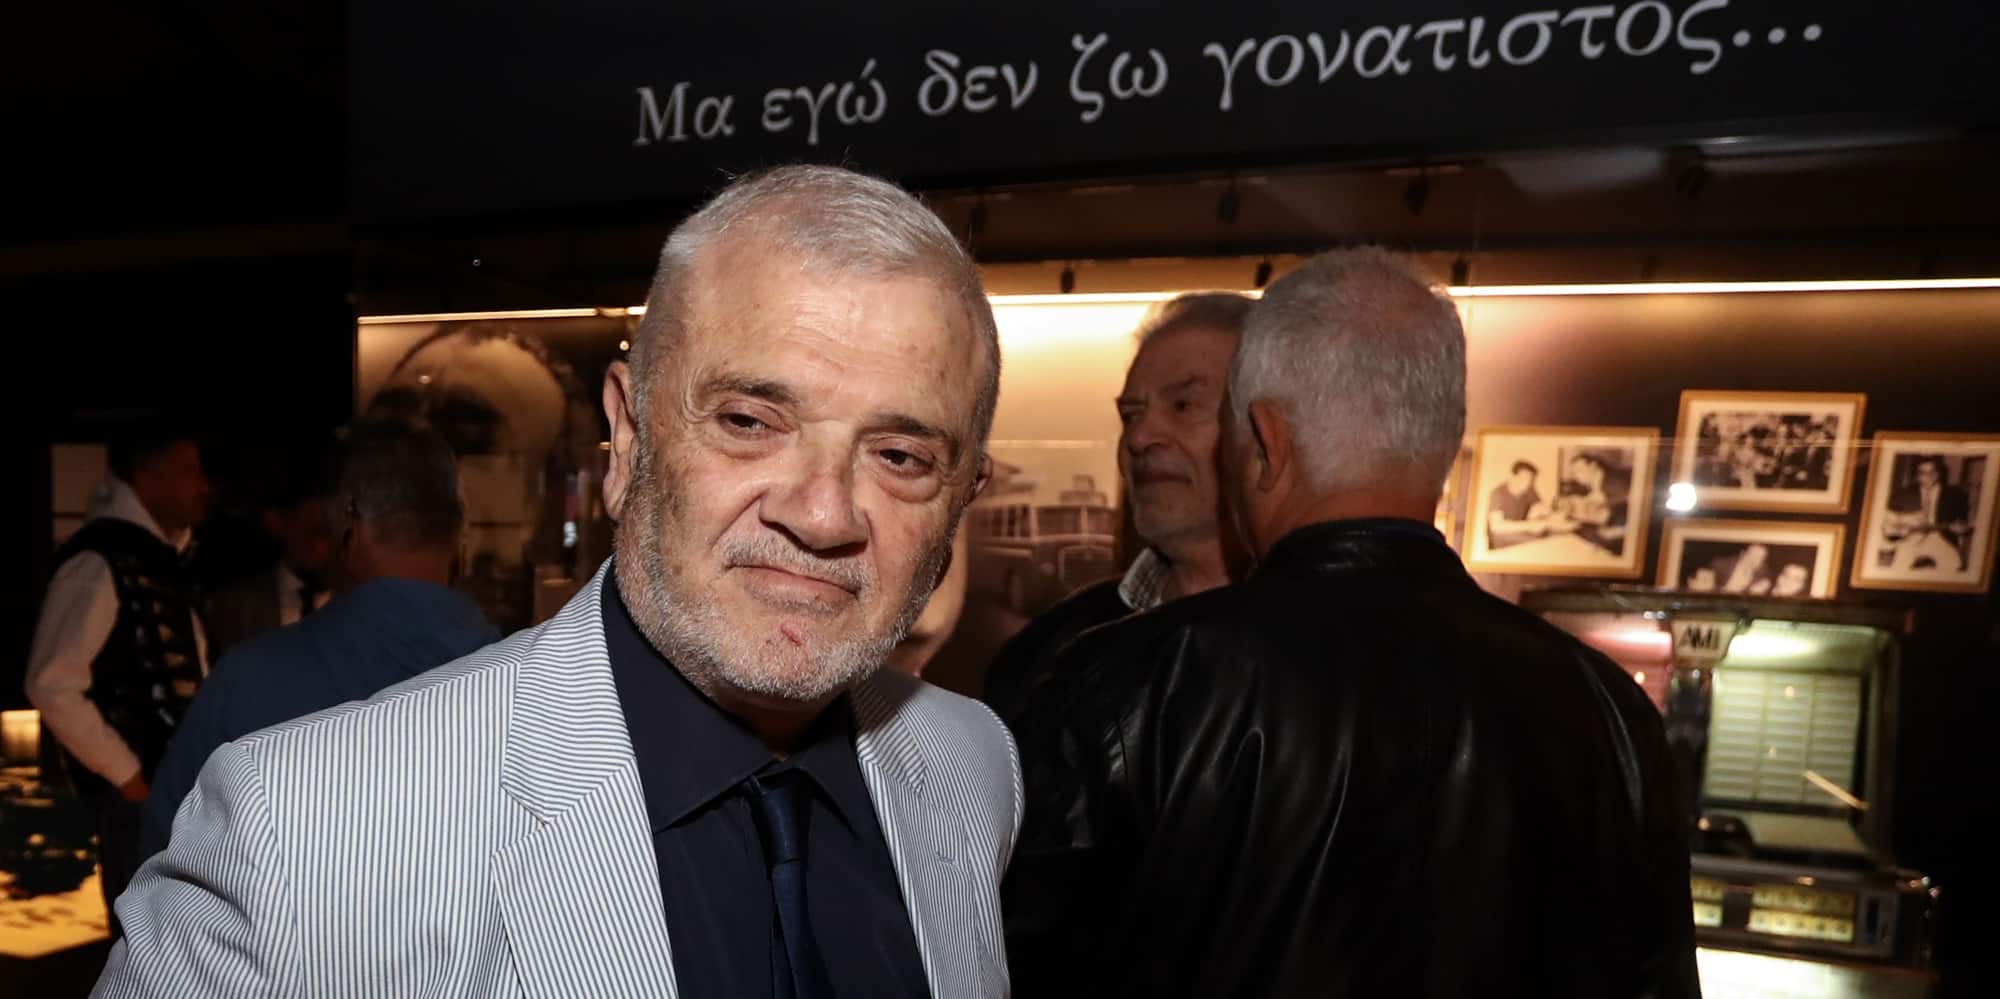 Ο Δημήτρης Μελισσανίδης στα εγκαίνια του Μουσείου Προσφυγικού Ελληνισμού στο γήπεδο της ΑΕΚ